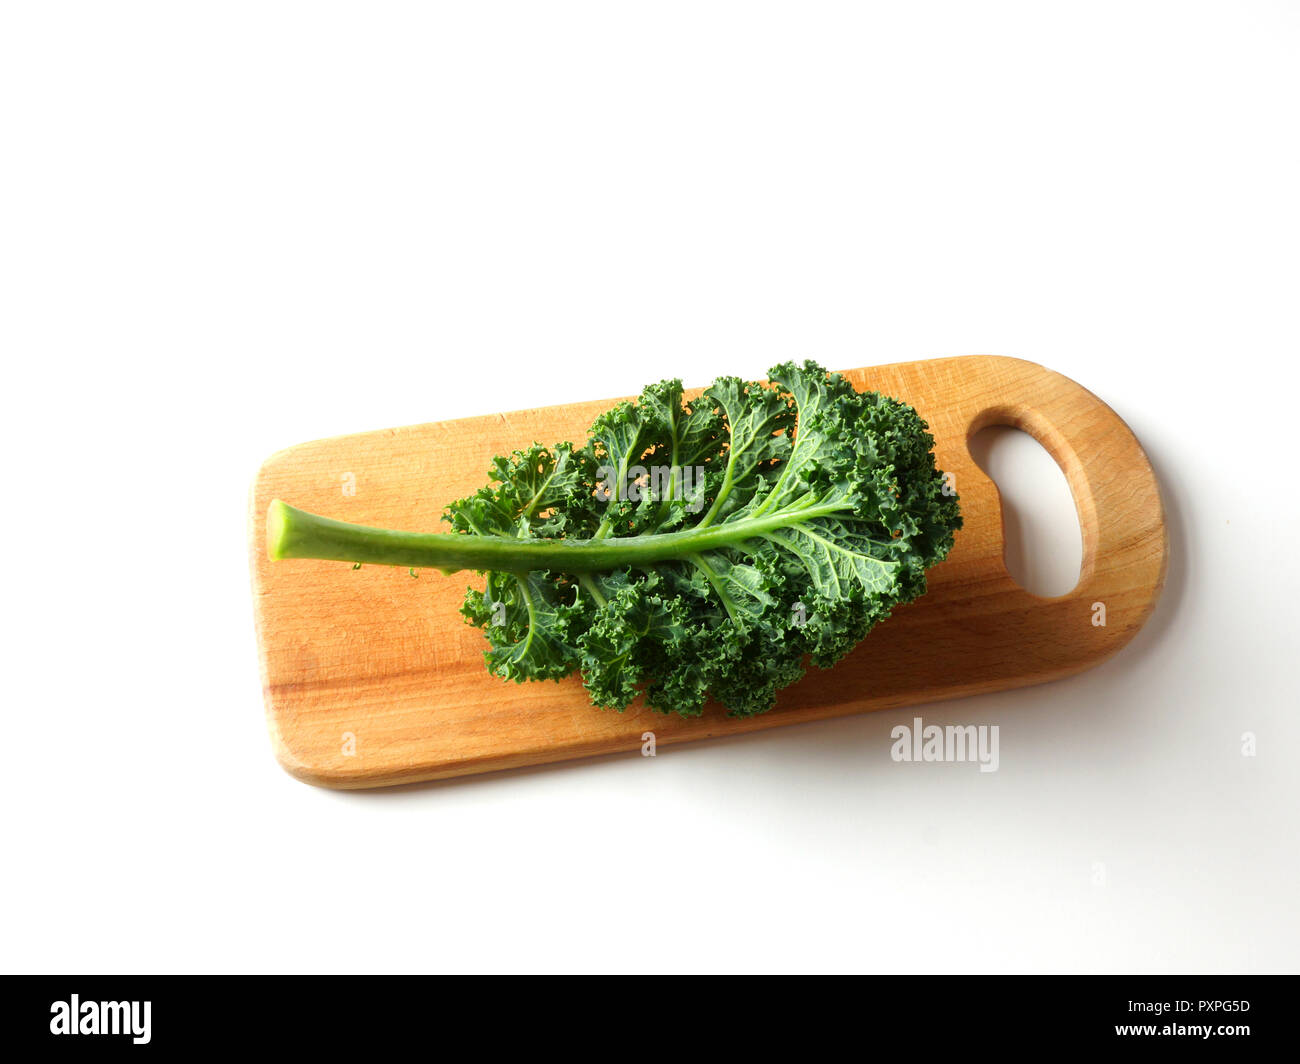 Blatt von Kale liegt auf einer hölzernen Schneidebrett. Blau geringelt Vates Kale auf weißem Hintergrund Stockfoto